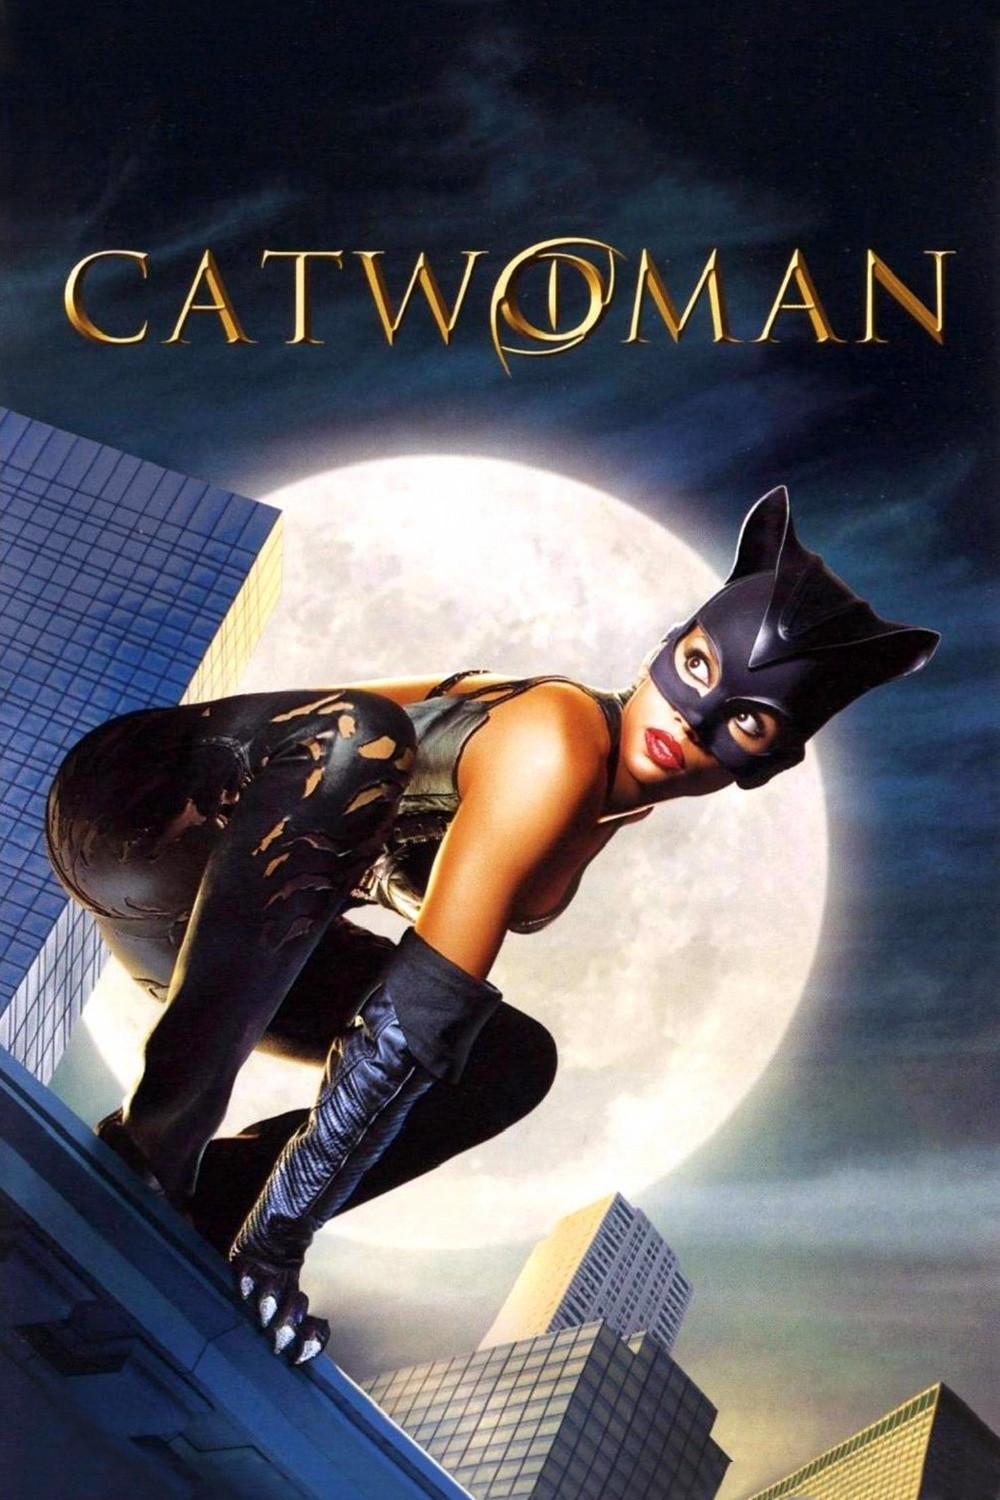 ดูหนังออนไลน์ฟรี แคท วูแมน Catwoman